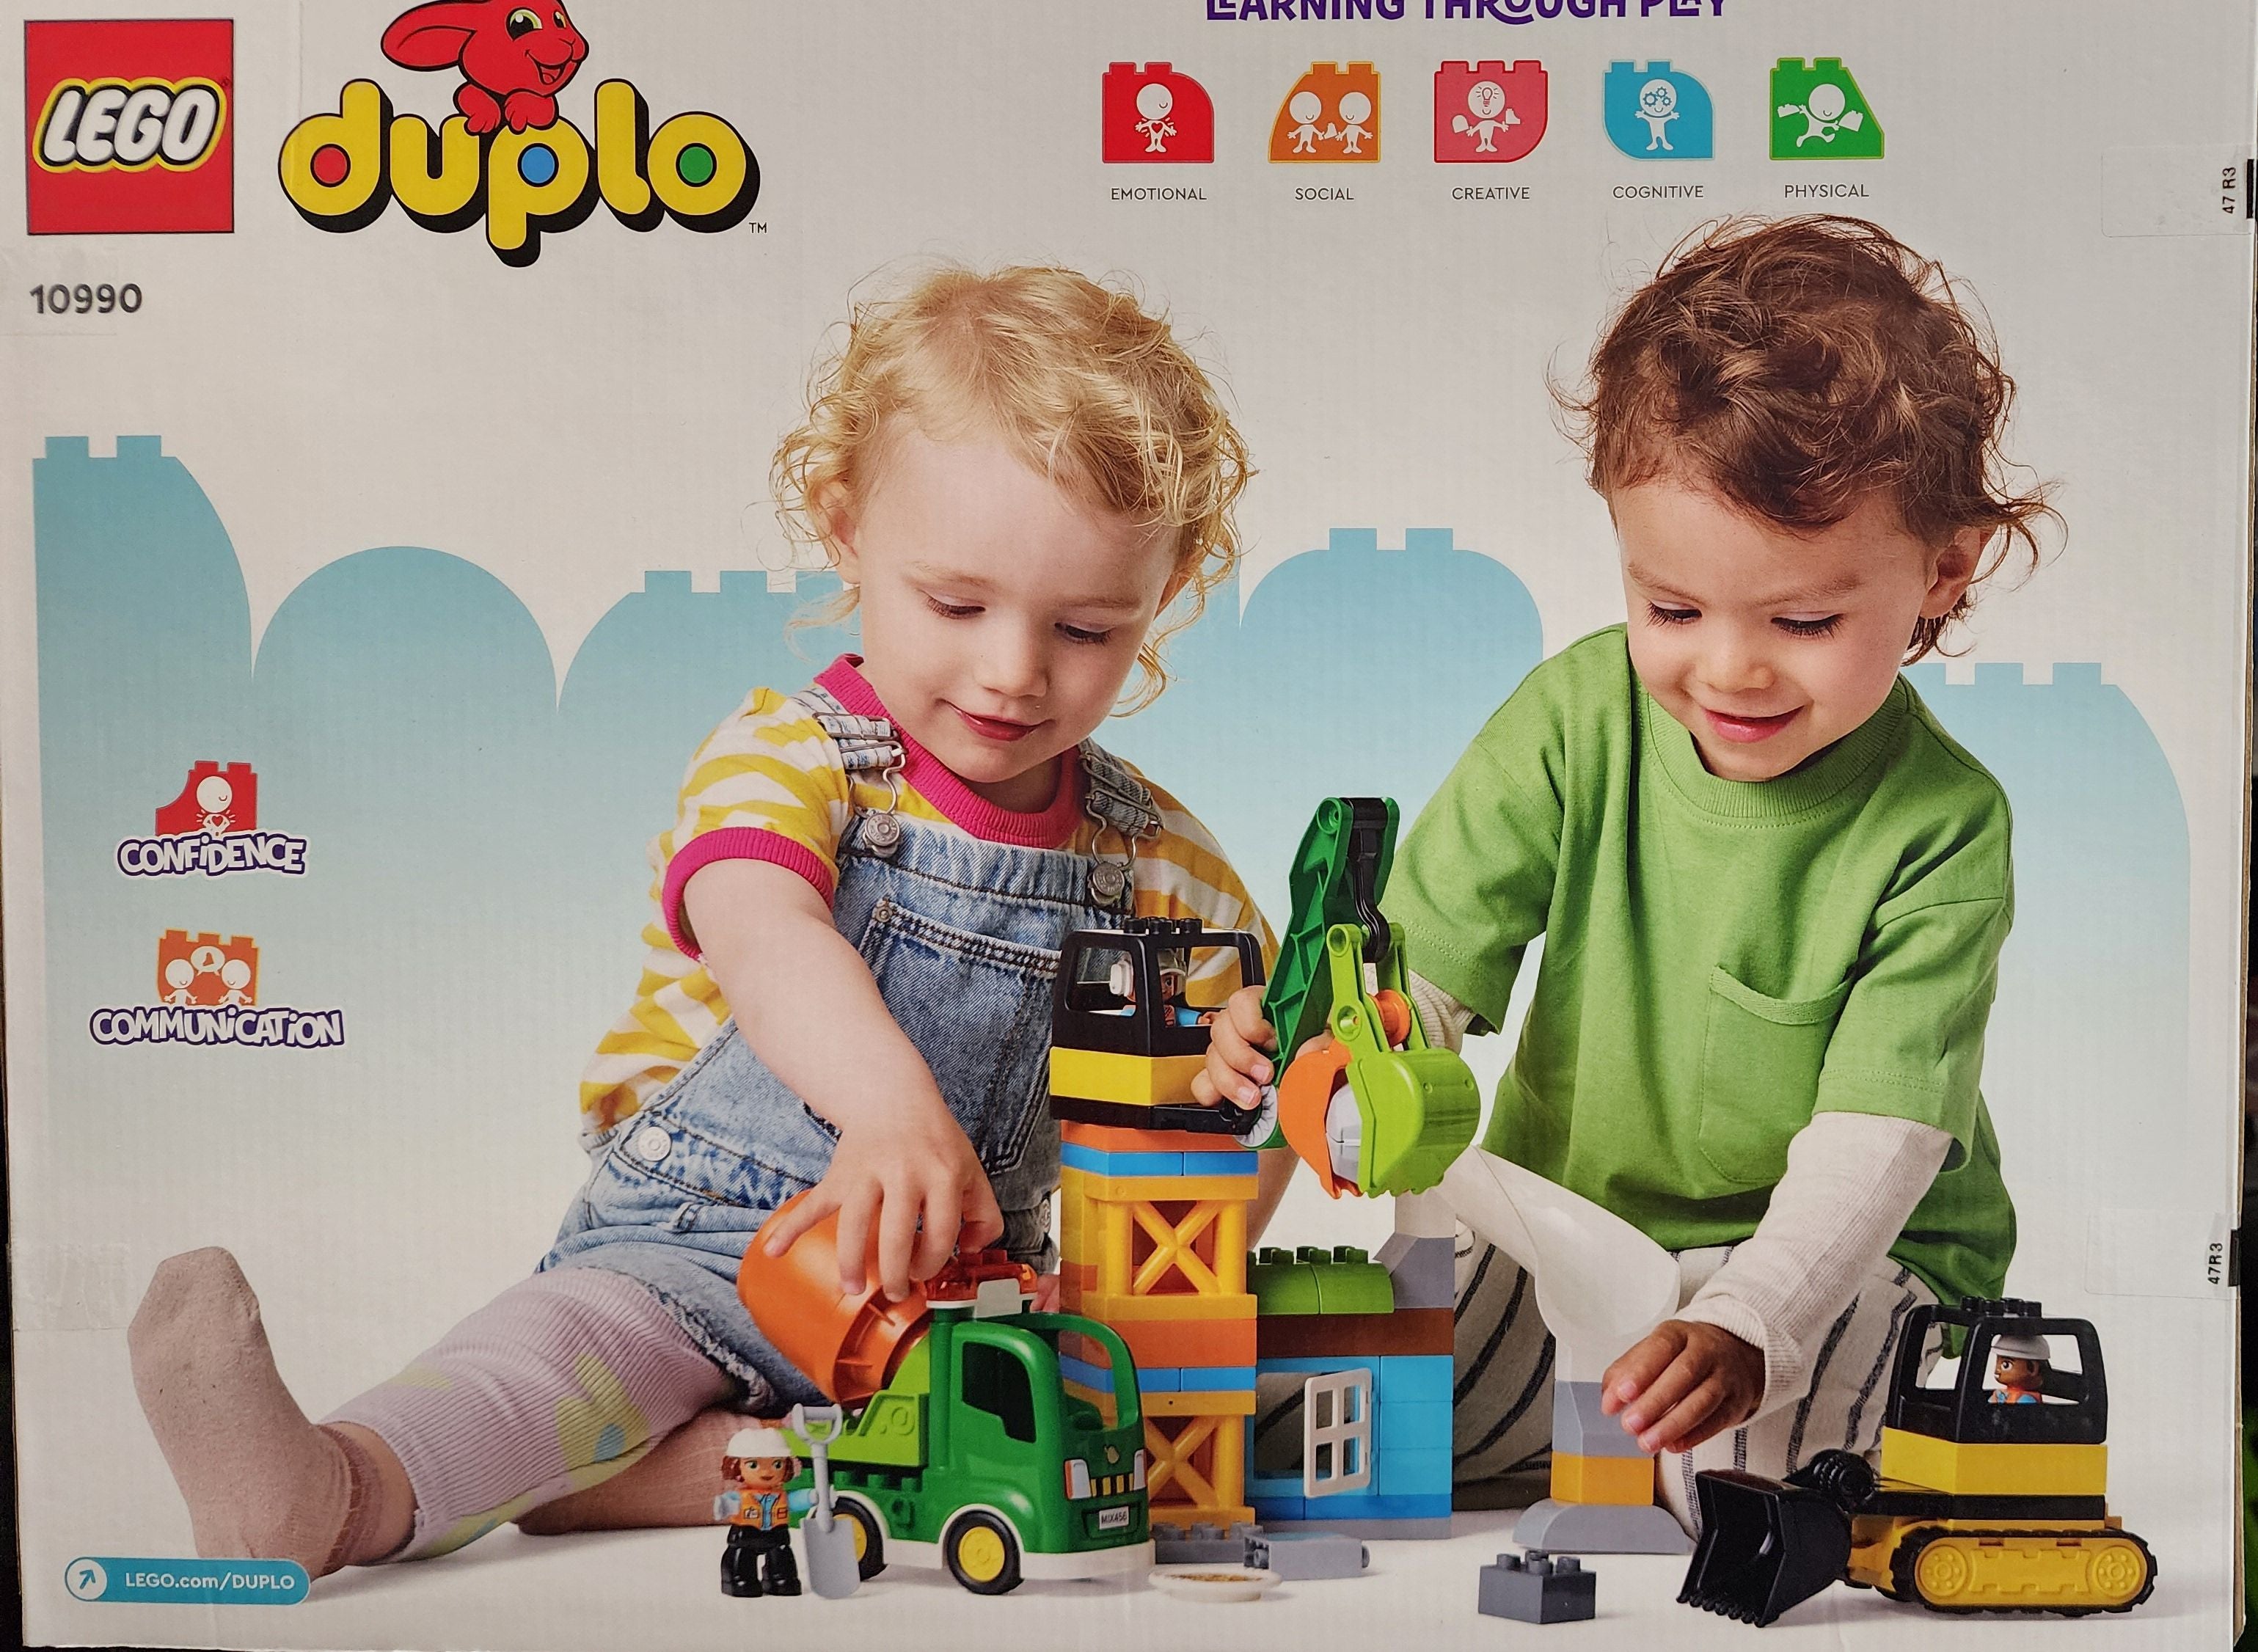 LEGO DUPLO Town Construction Site 10990 Building Toy Set (61 Pieces)